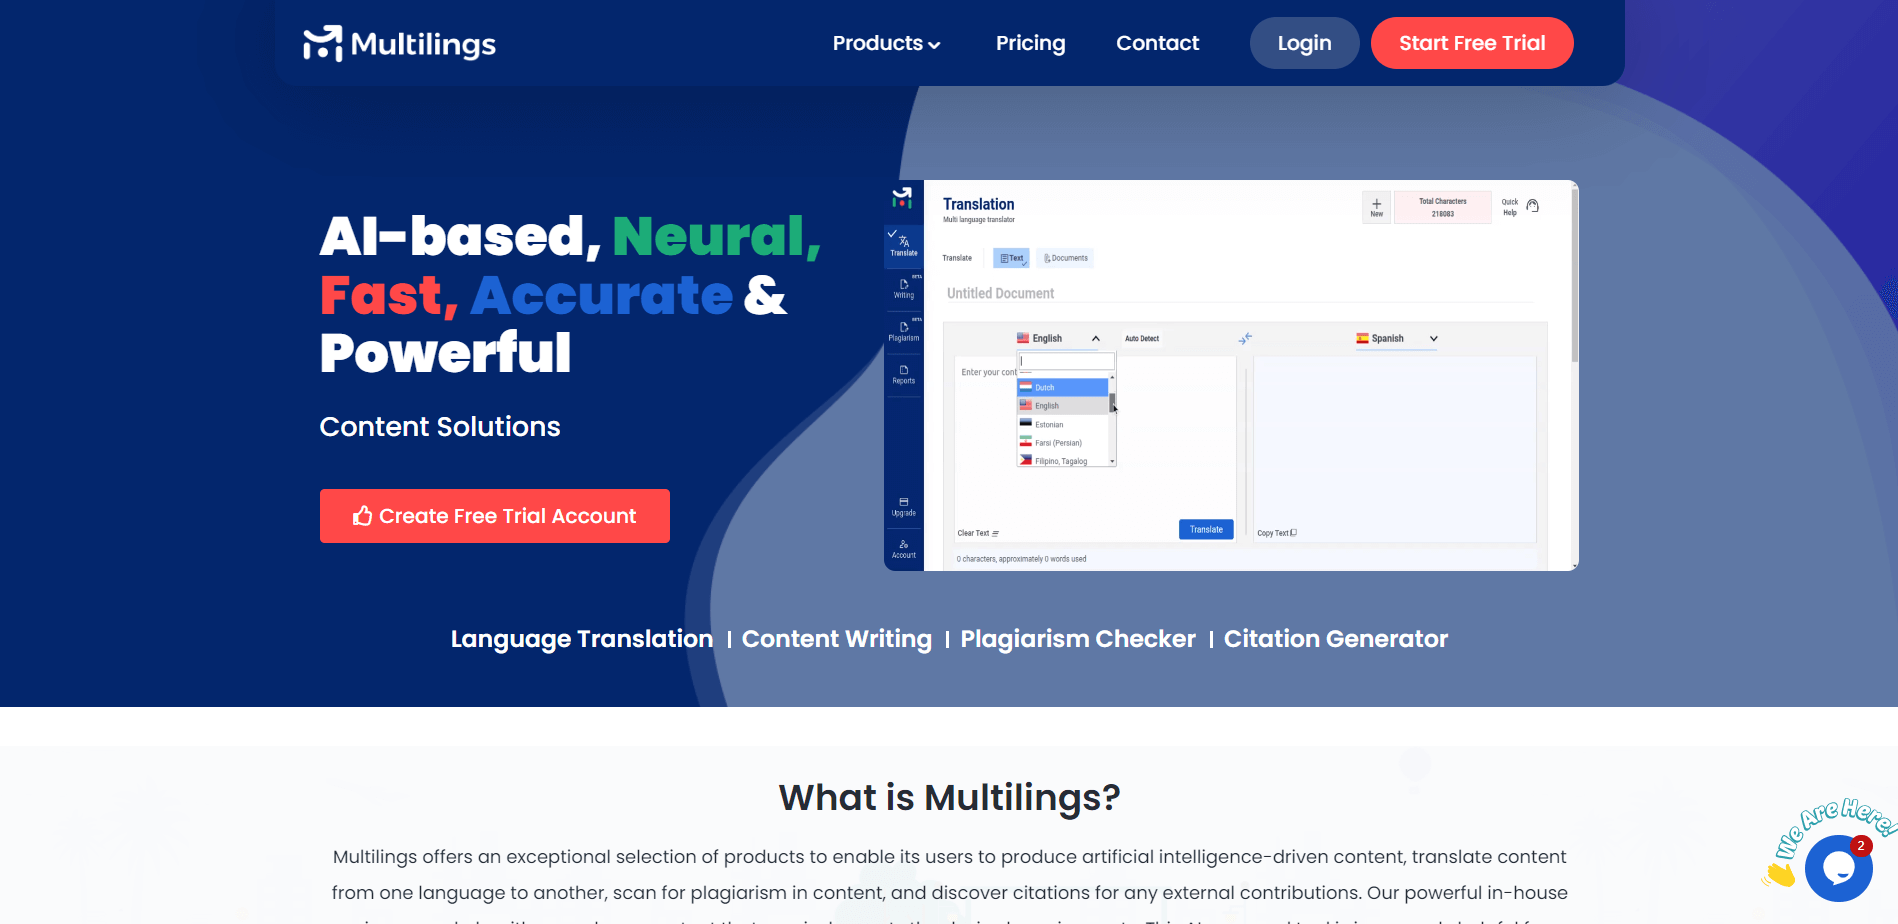 (c) Multilings.com